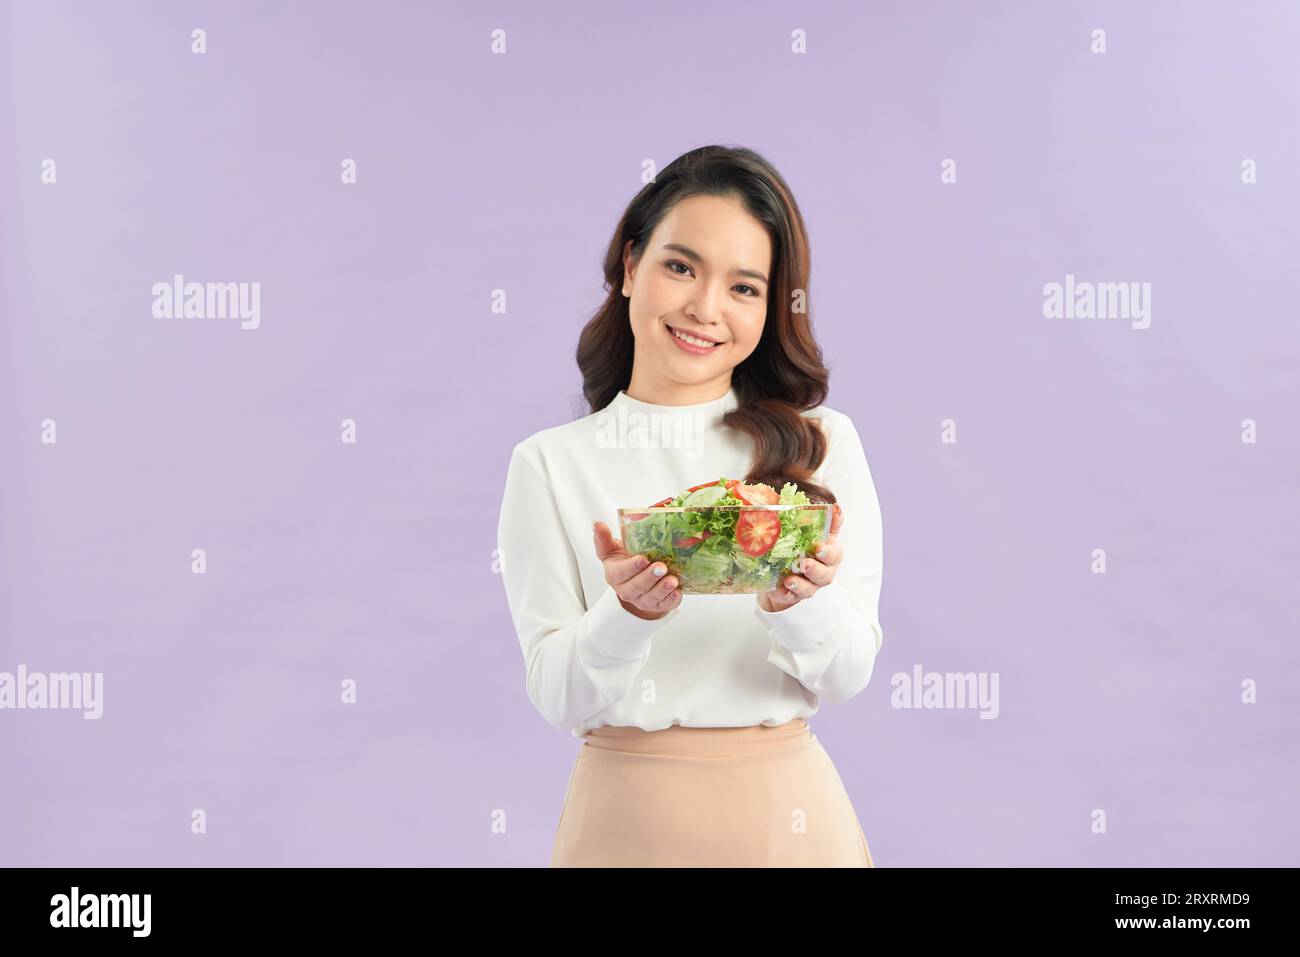 Wunderschöner junger asiatischer Salat mit großem Lächeln und fröhlichem strahlendem Gesicht Stockfoto